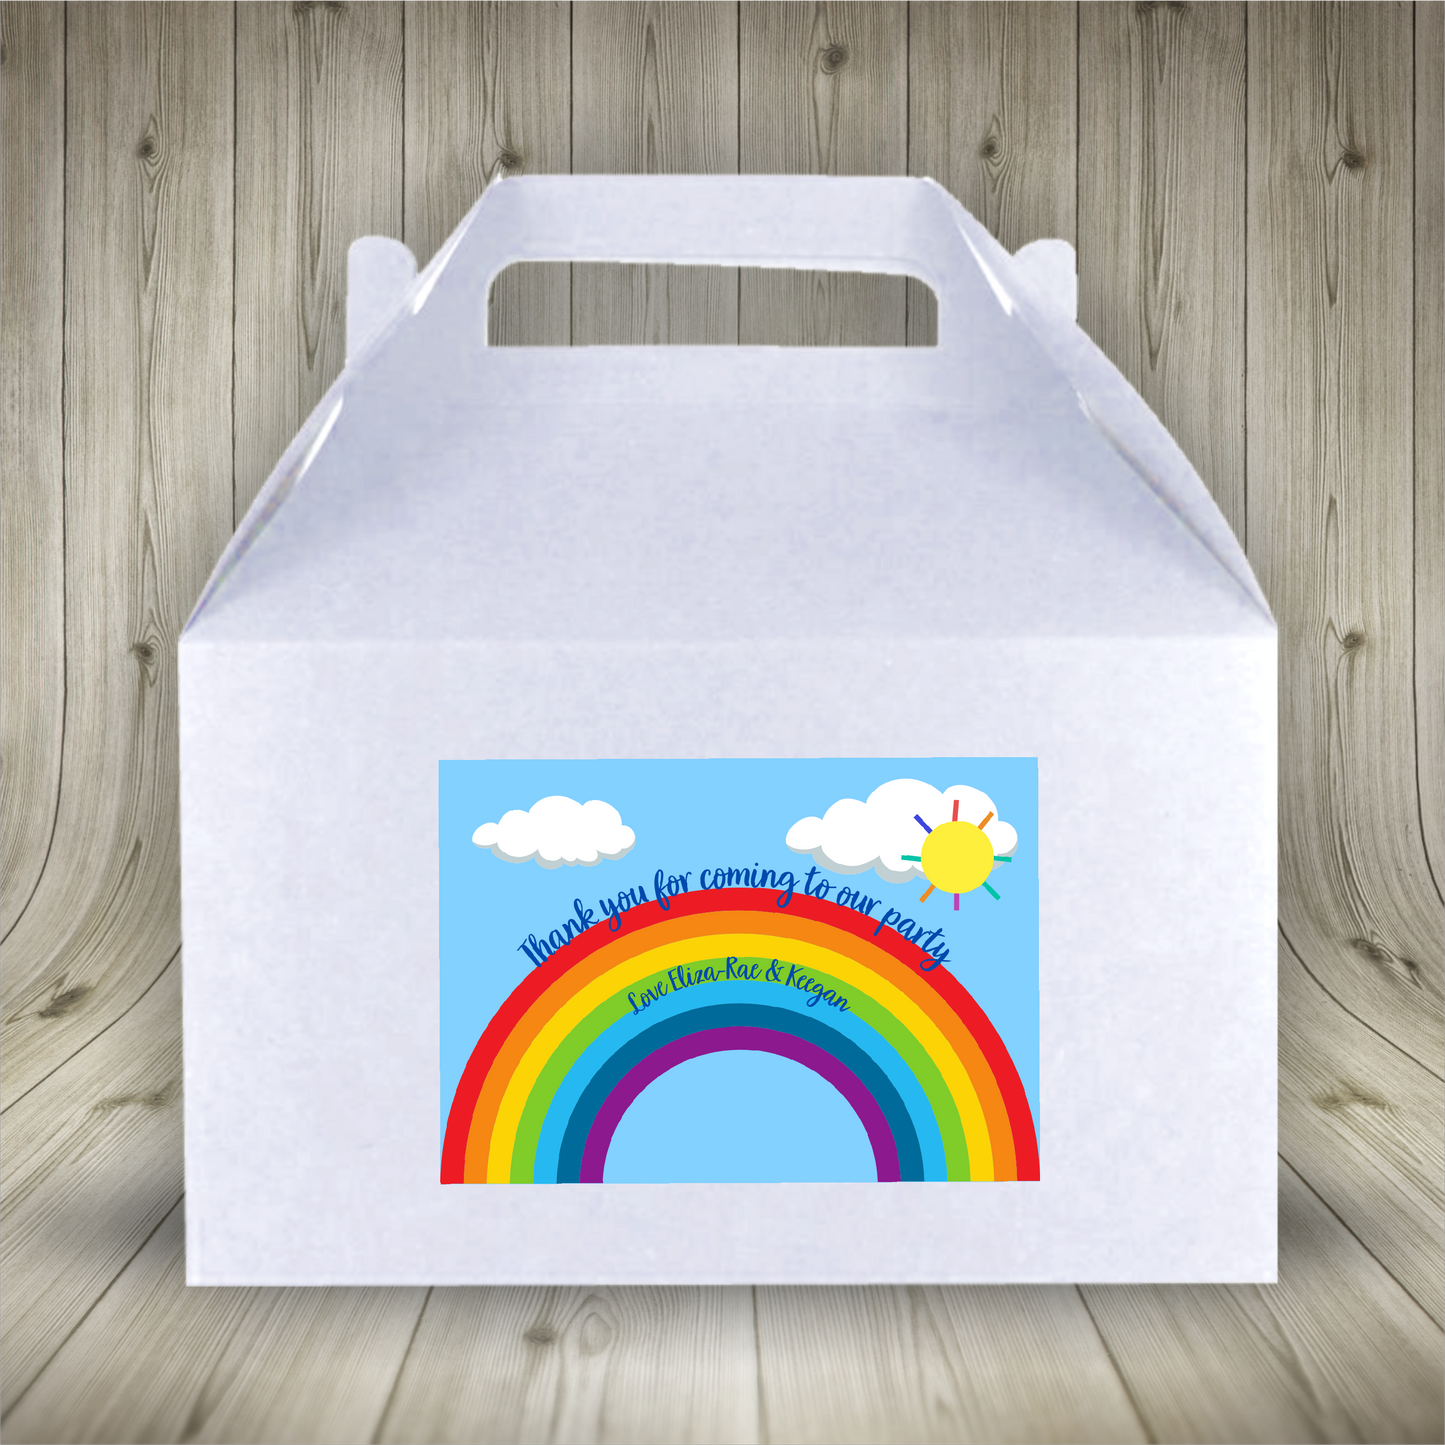 Party Boxes | Rainbow Party Boxes | Rainbow Party | Party Boxes | Rainbow Party Decor | Party Bags